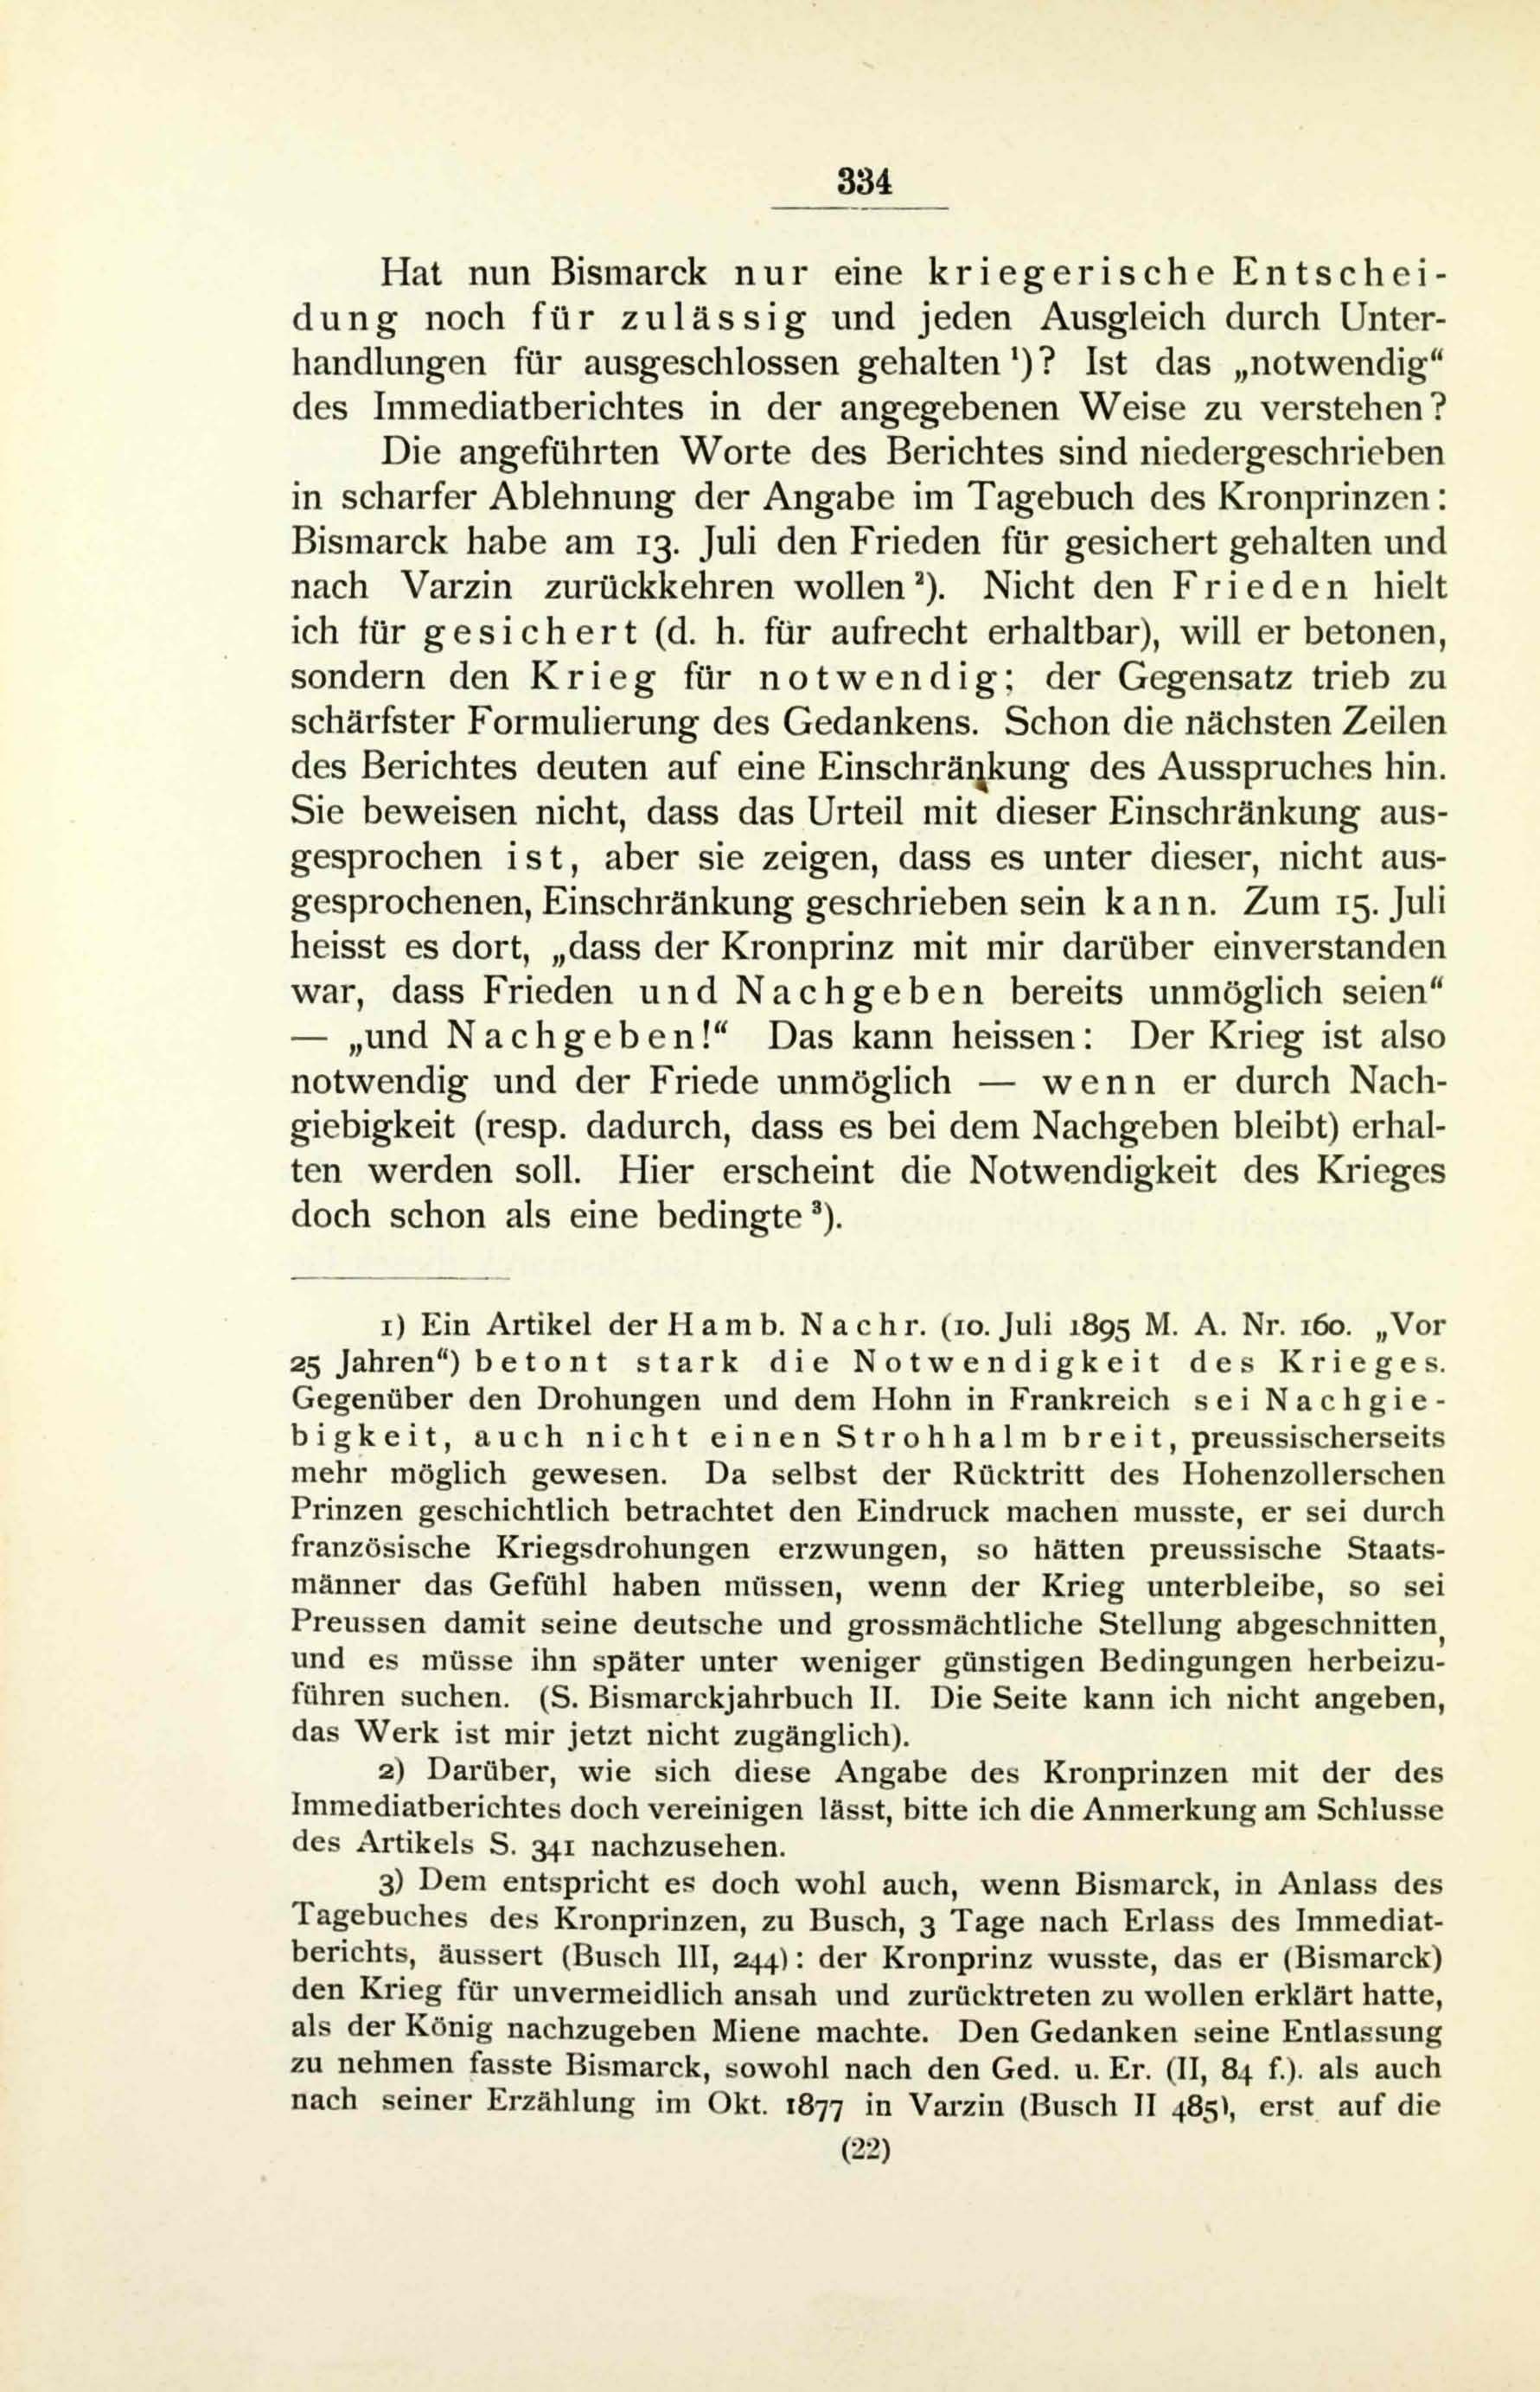 Die Zeddelmannsche Privat-Lehranstalt (1900) | 339. (334) Main body of text